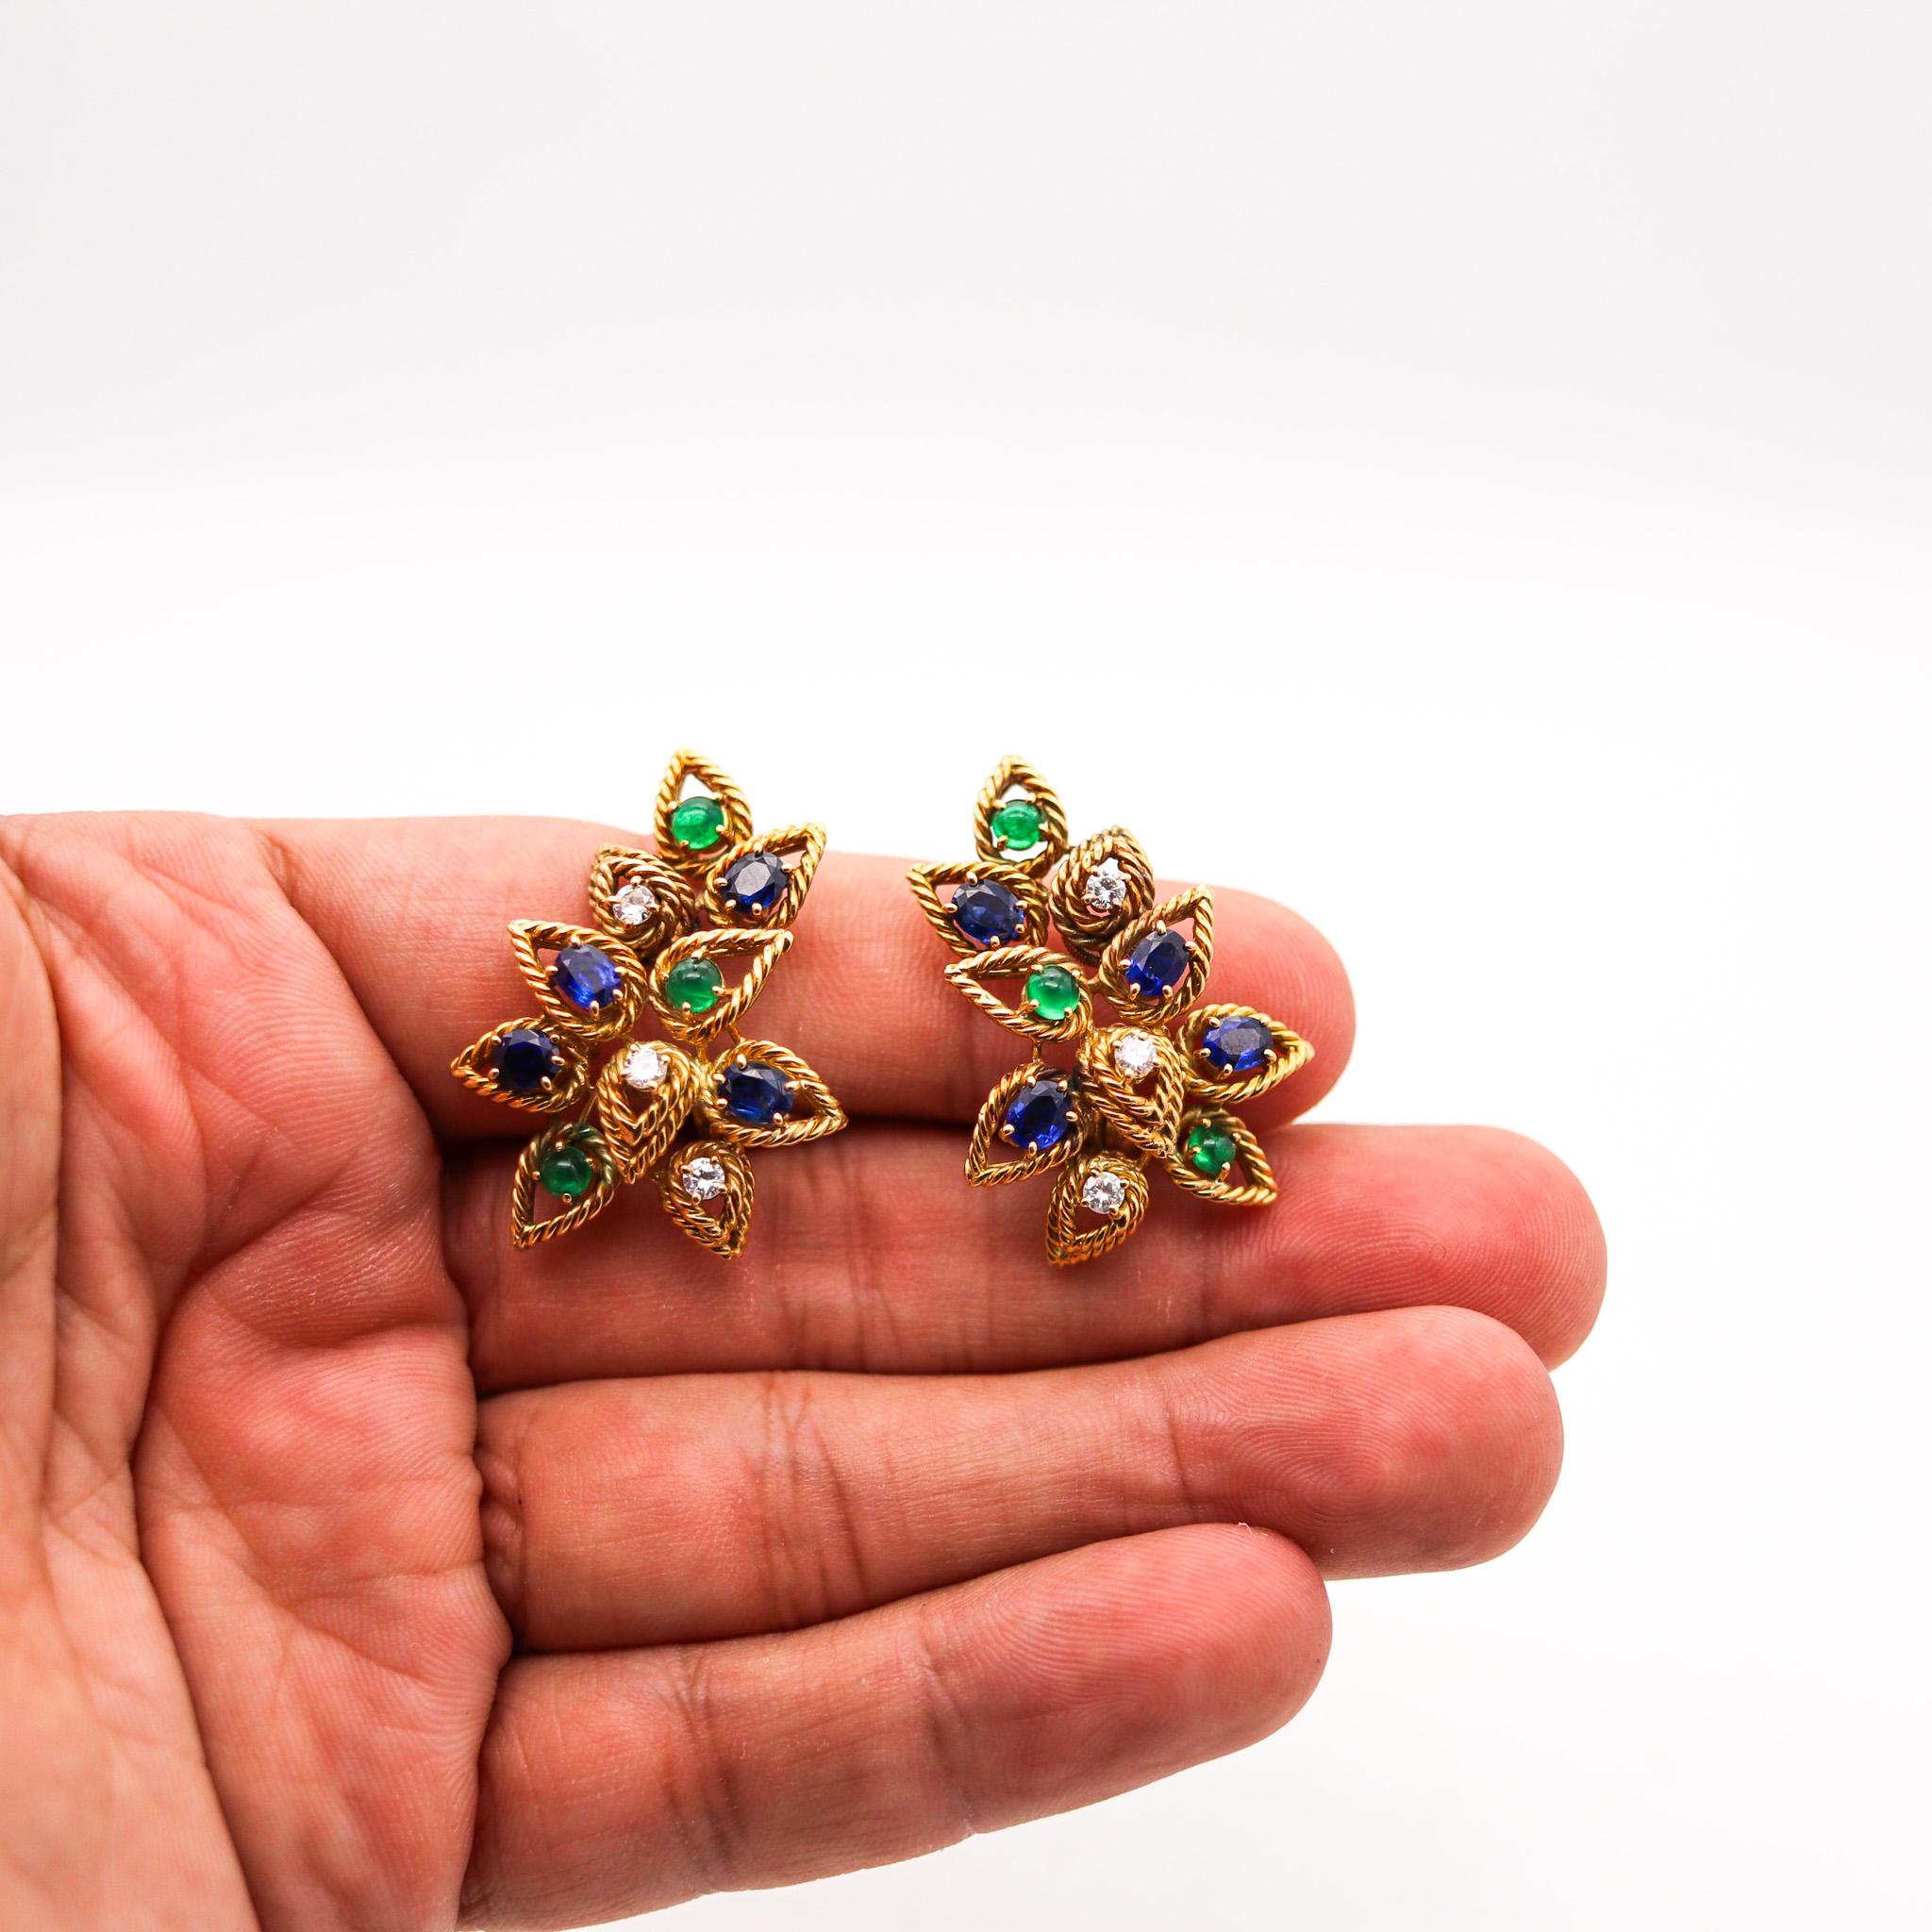 Women's Italian Modernist Clips Earrings In 18Kt Gold 5.68 Ctw Diamonds Sapphire Emerald For Sale